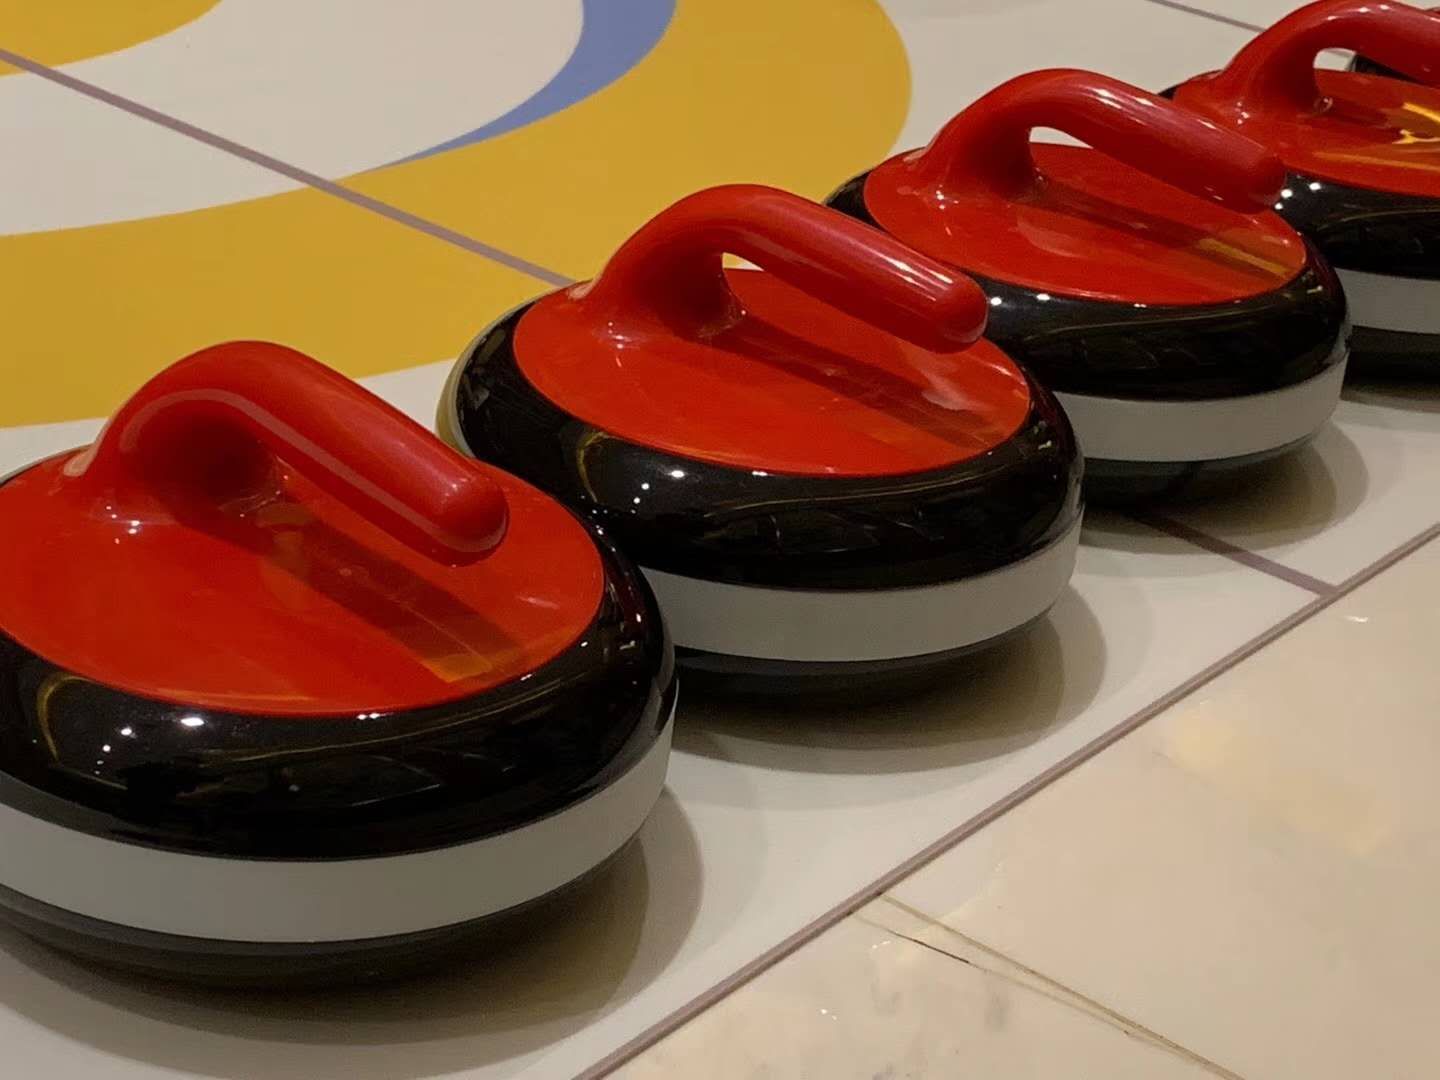 北京校园地板冰壶采用冰壶专用轴承运动更顺滑滚珠可拆卸清理